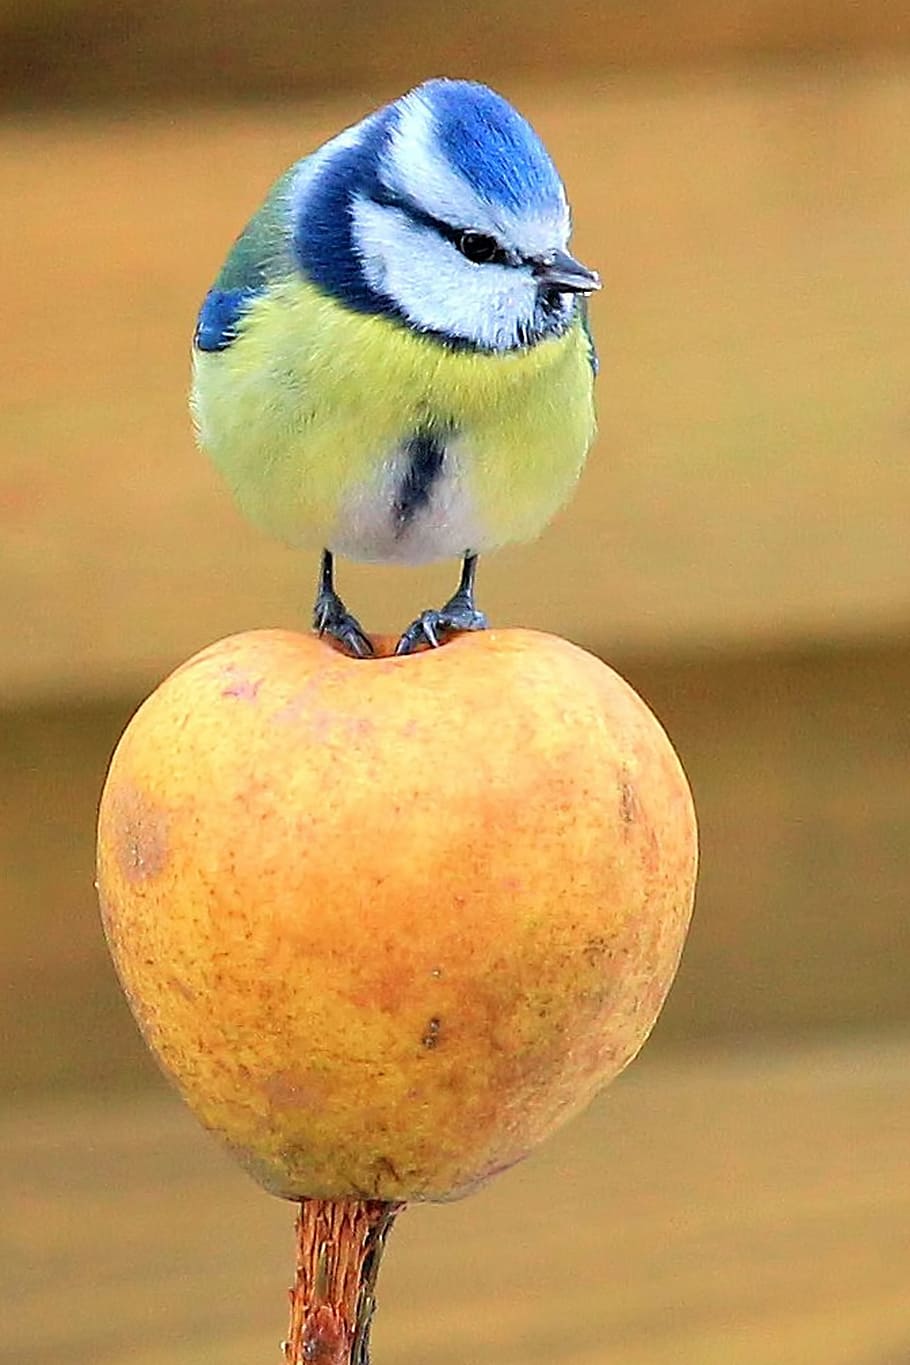 azul, amarelo, pássaro, tit, tit azul, maçã, em pé, pássaro canoro, fotografia da vida selvagem, pássaro pequeno